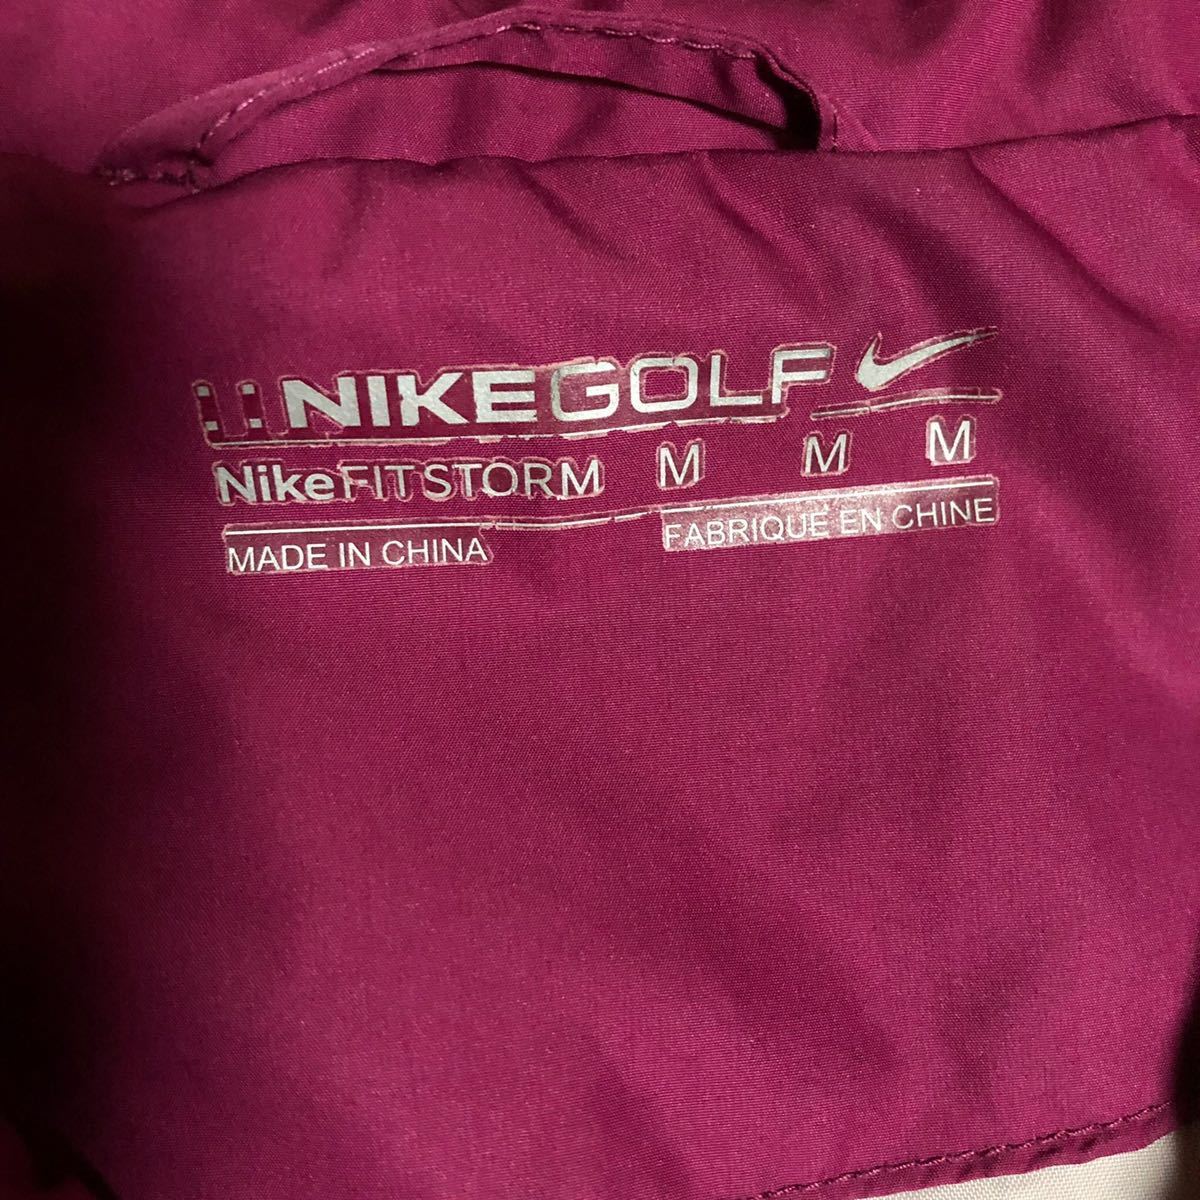 【NIKE GOLF】ナイキゴルフ 2way ジャケット レディース M